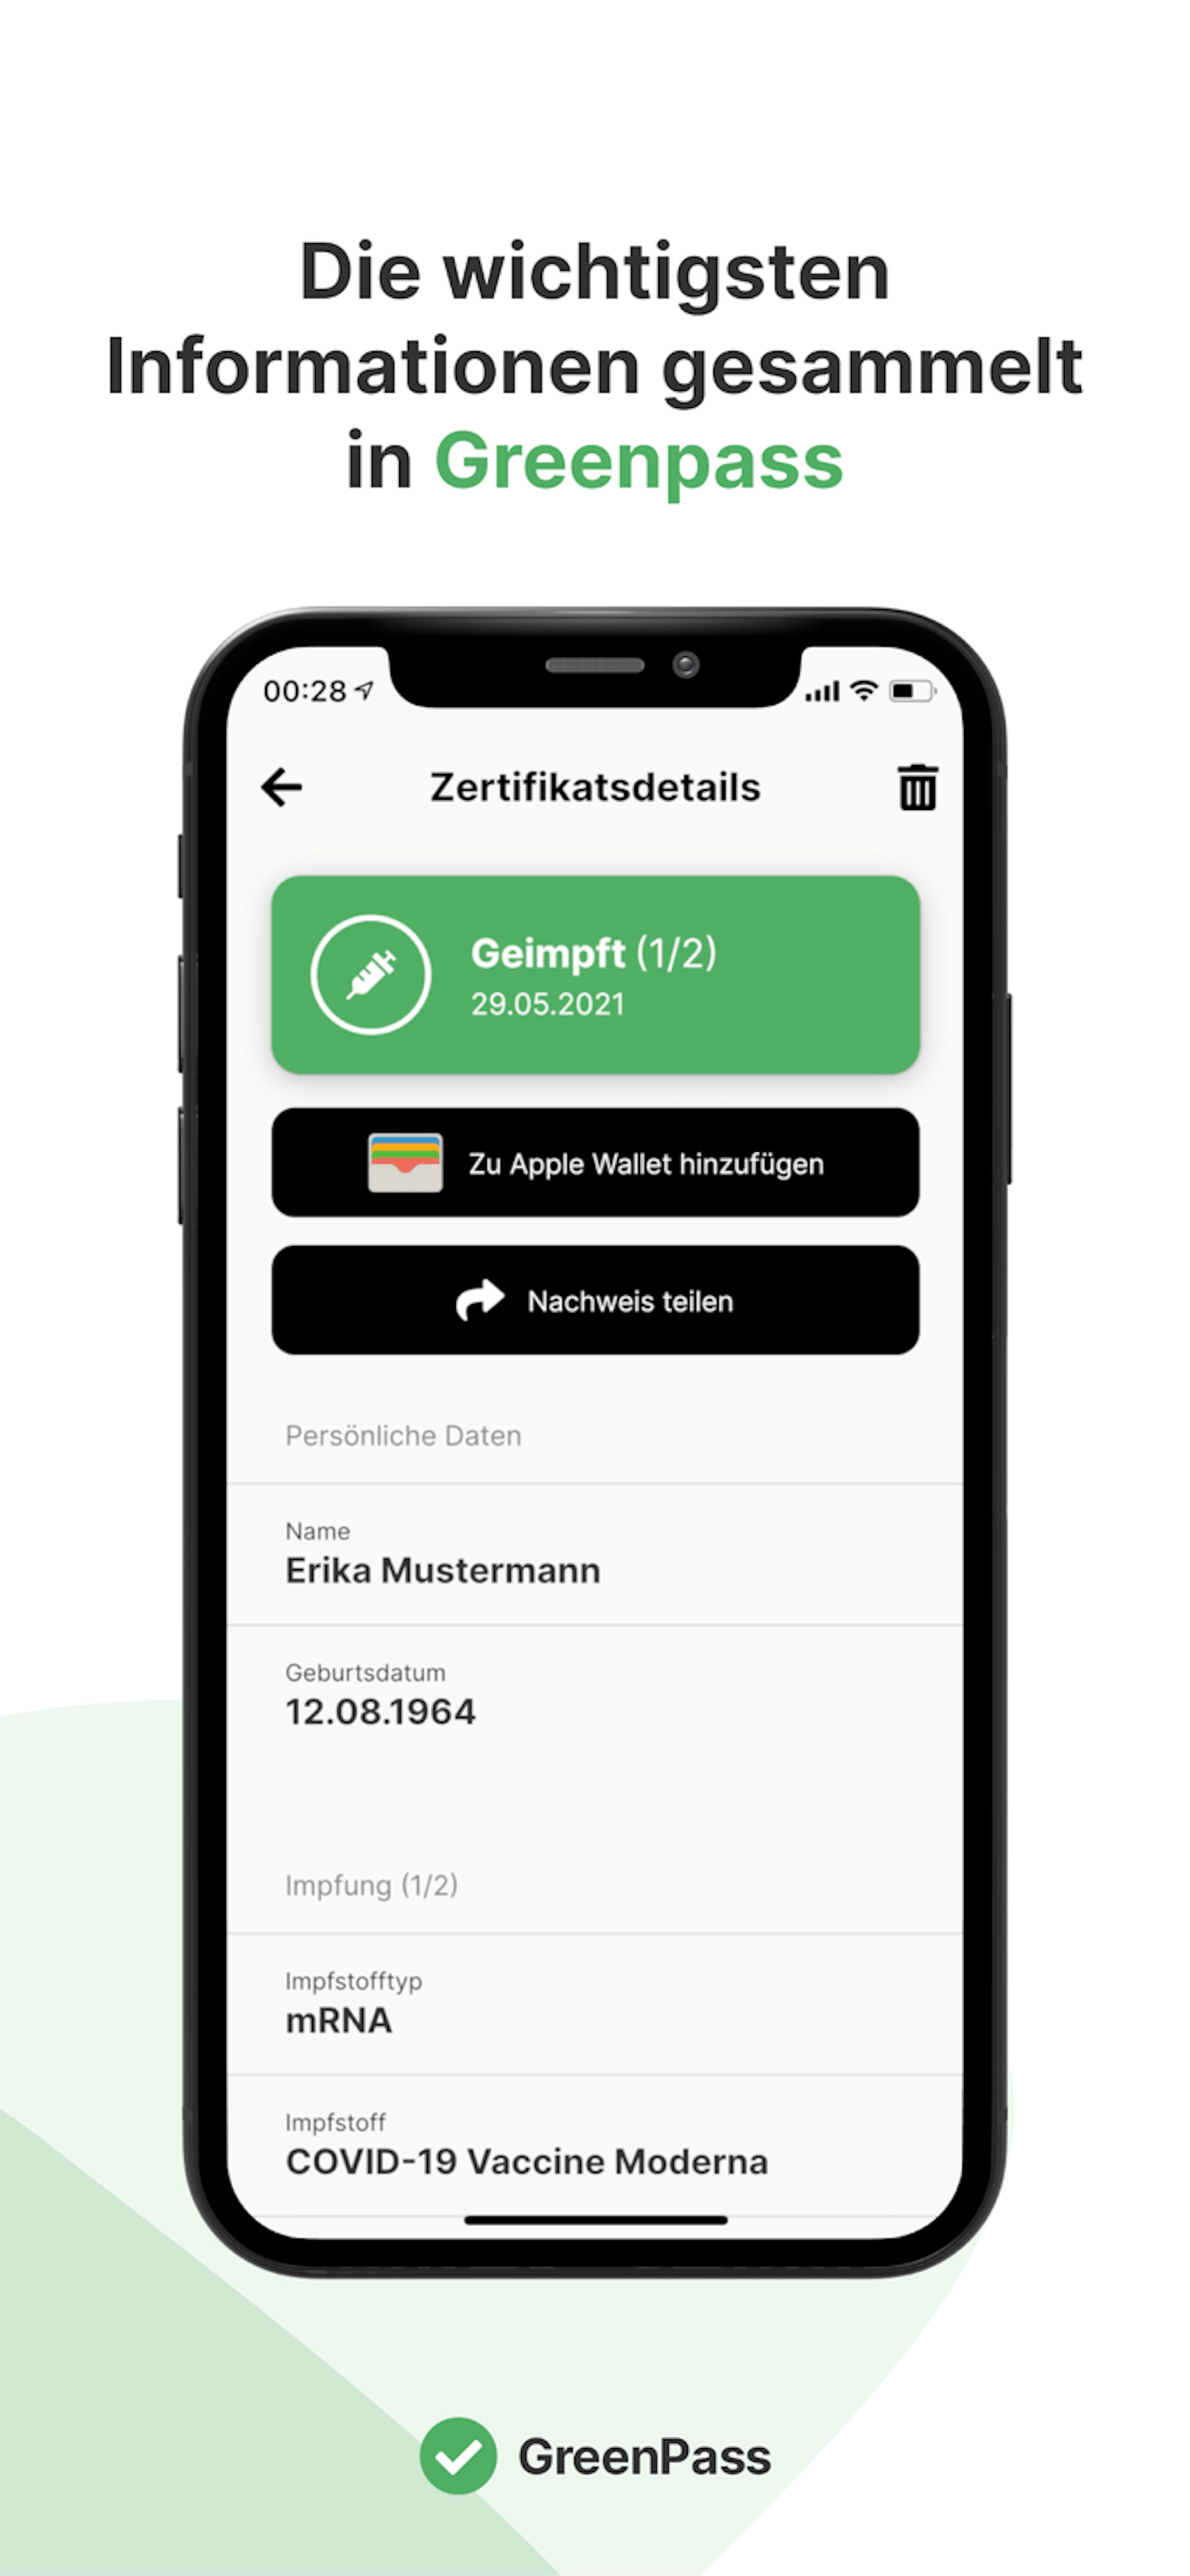 Ein Team der FH Hagenberg hat eine einfache App für den Grünen Pass entwickelt.